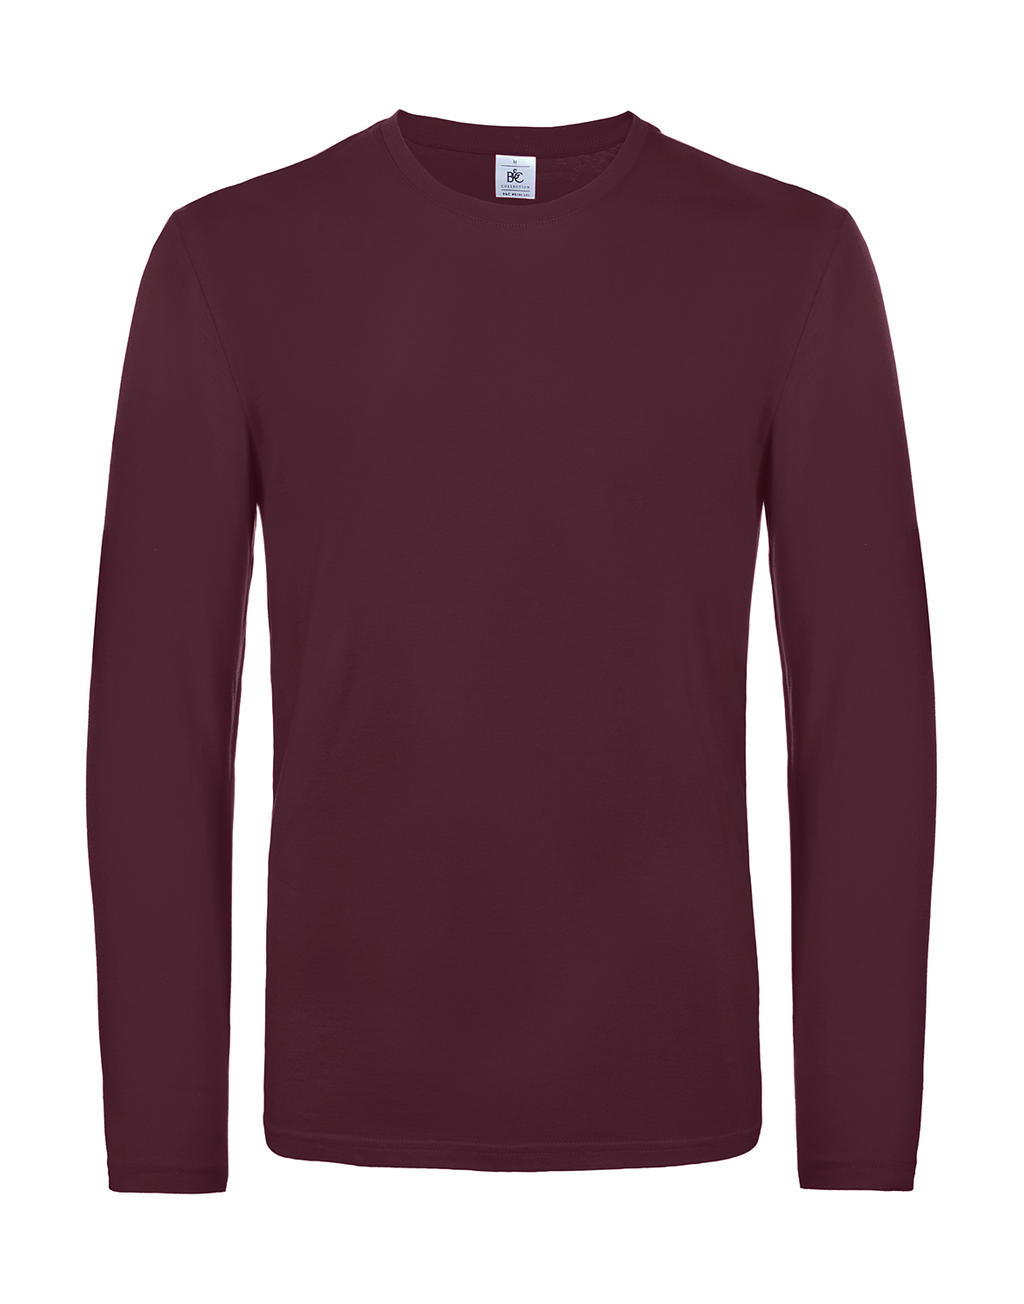 Tričko s dlhými rukávmi #E190 - burgundy